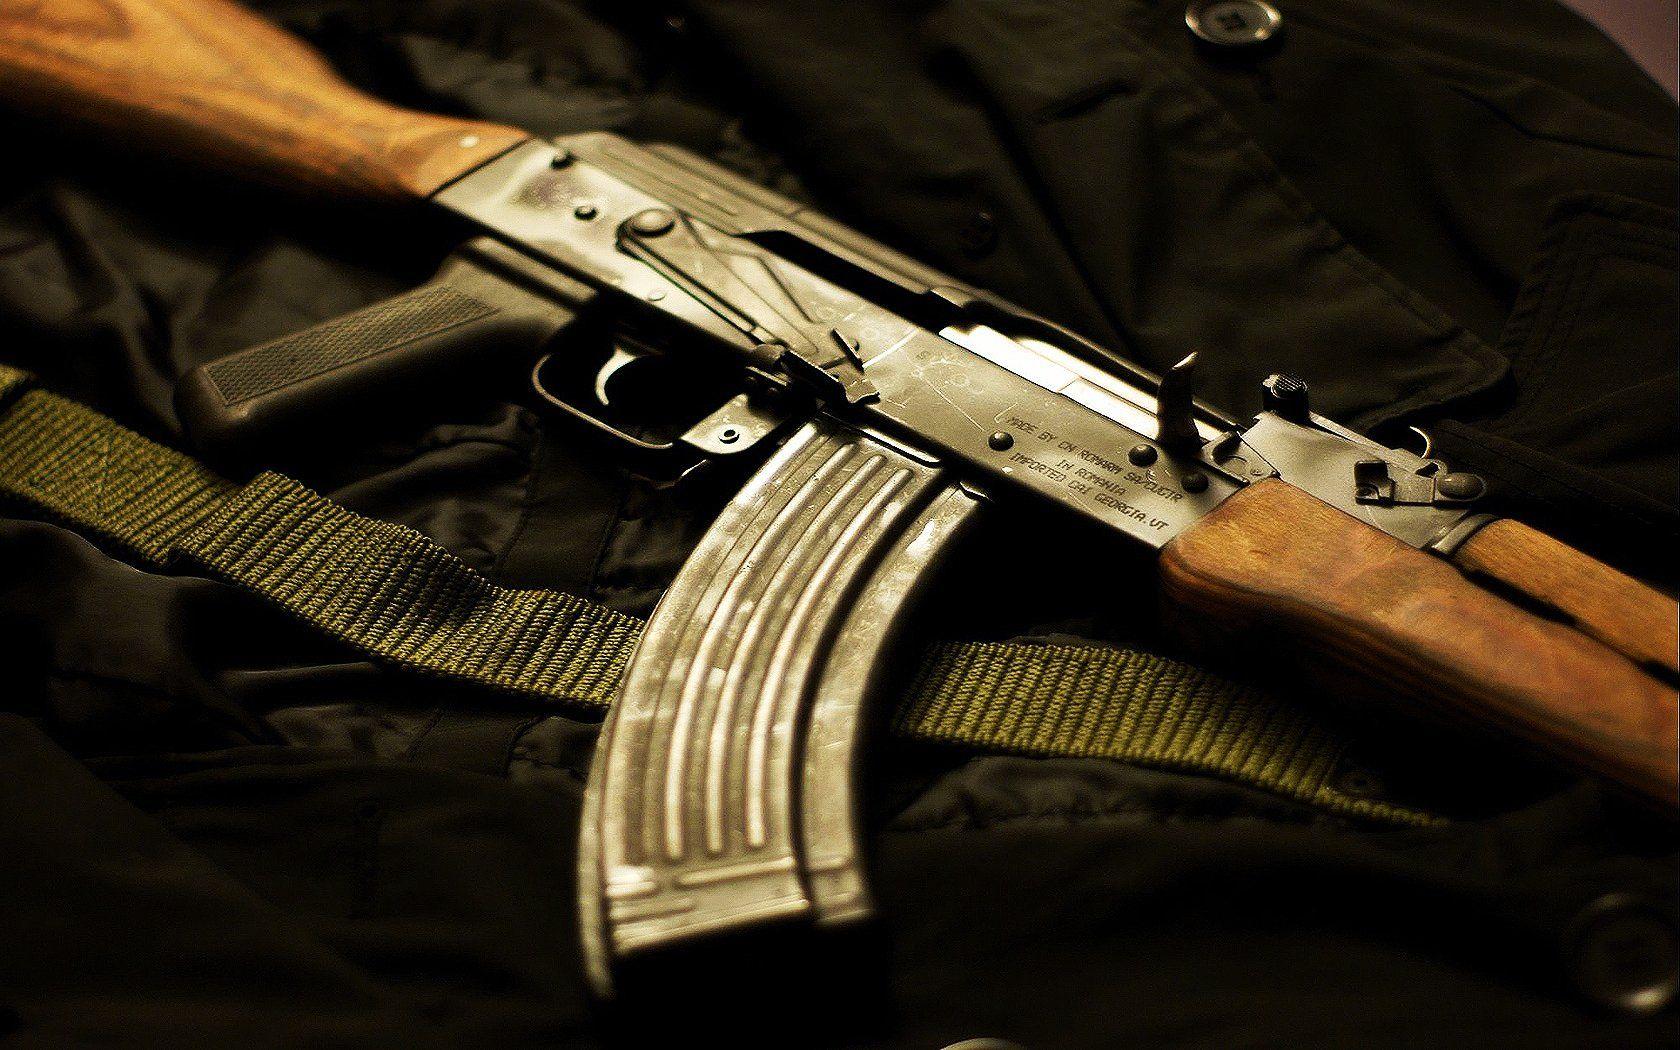 Akm Assault Rifle HD Wallpaper and Background Image